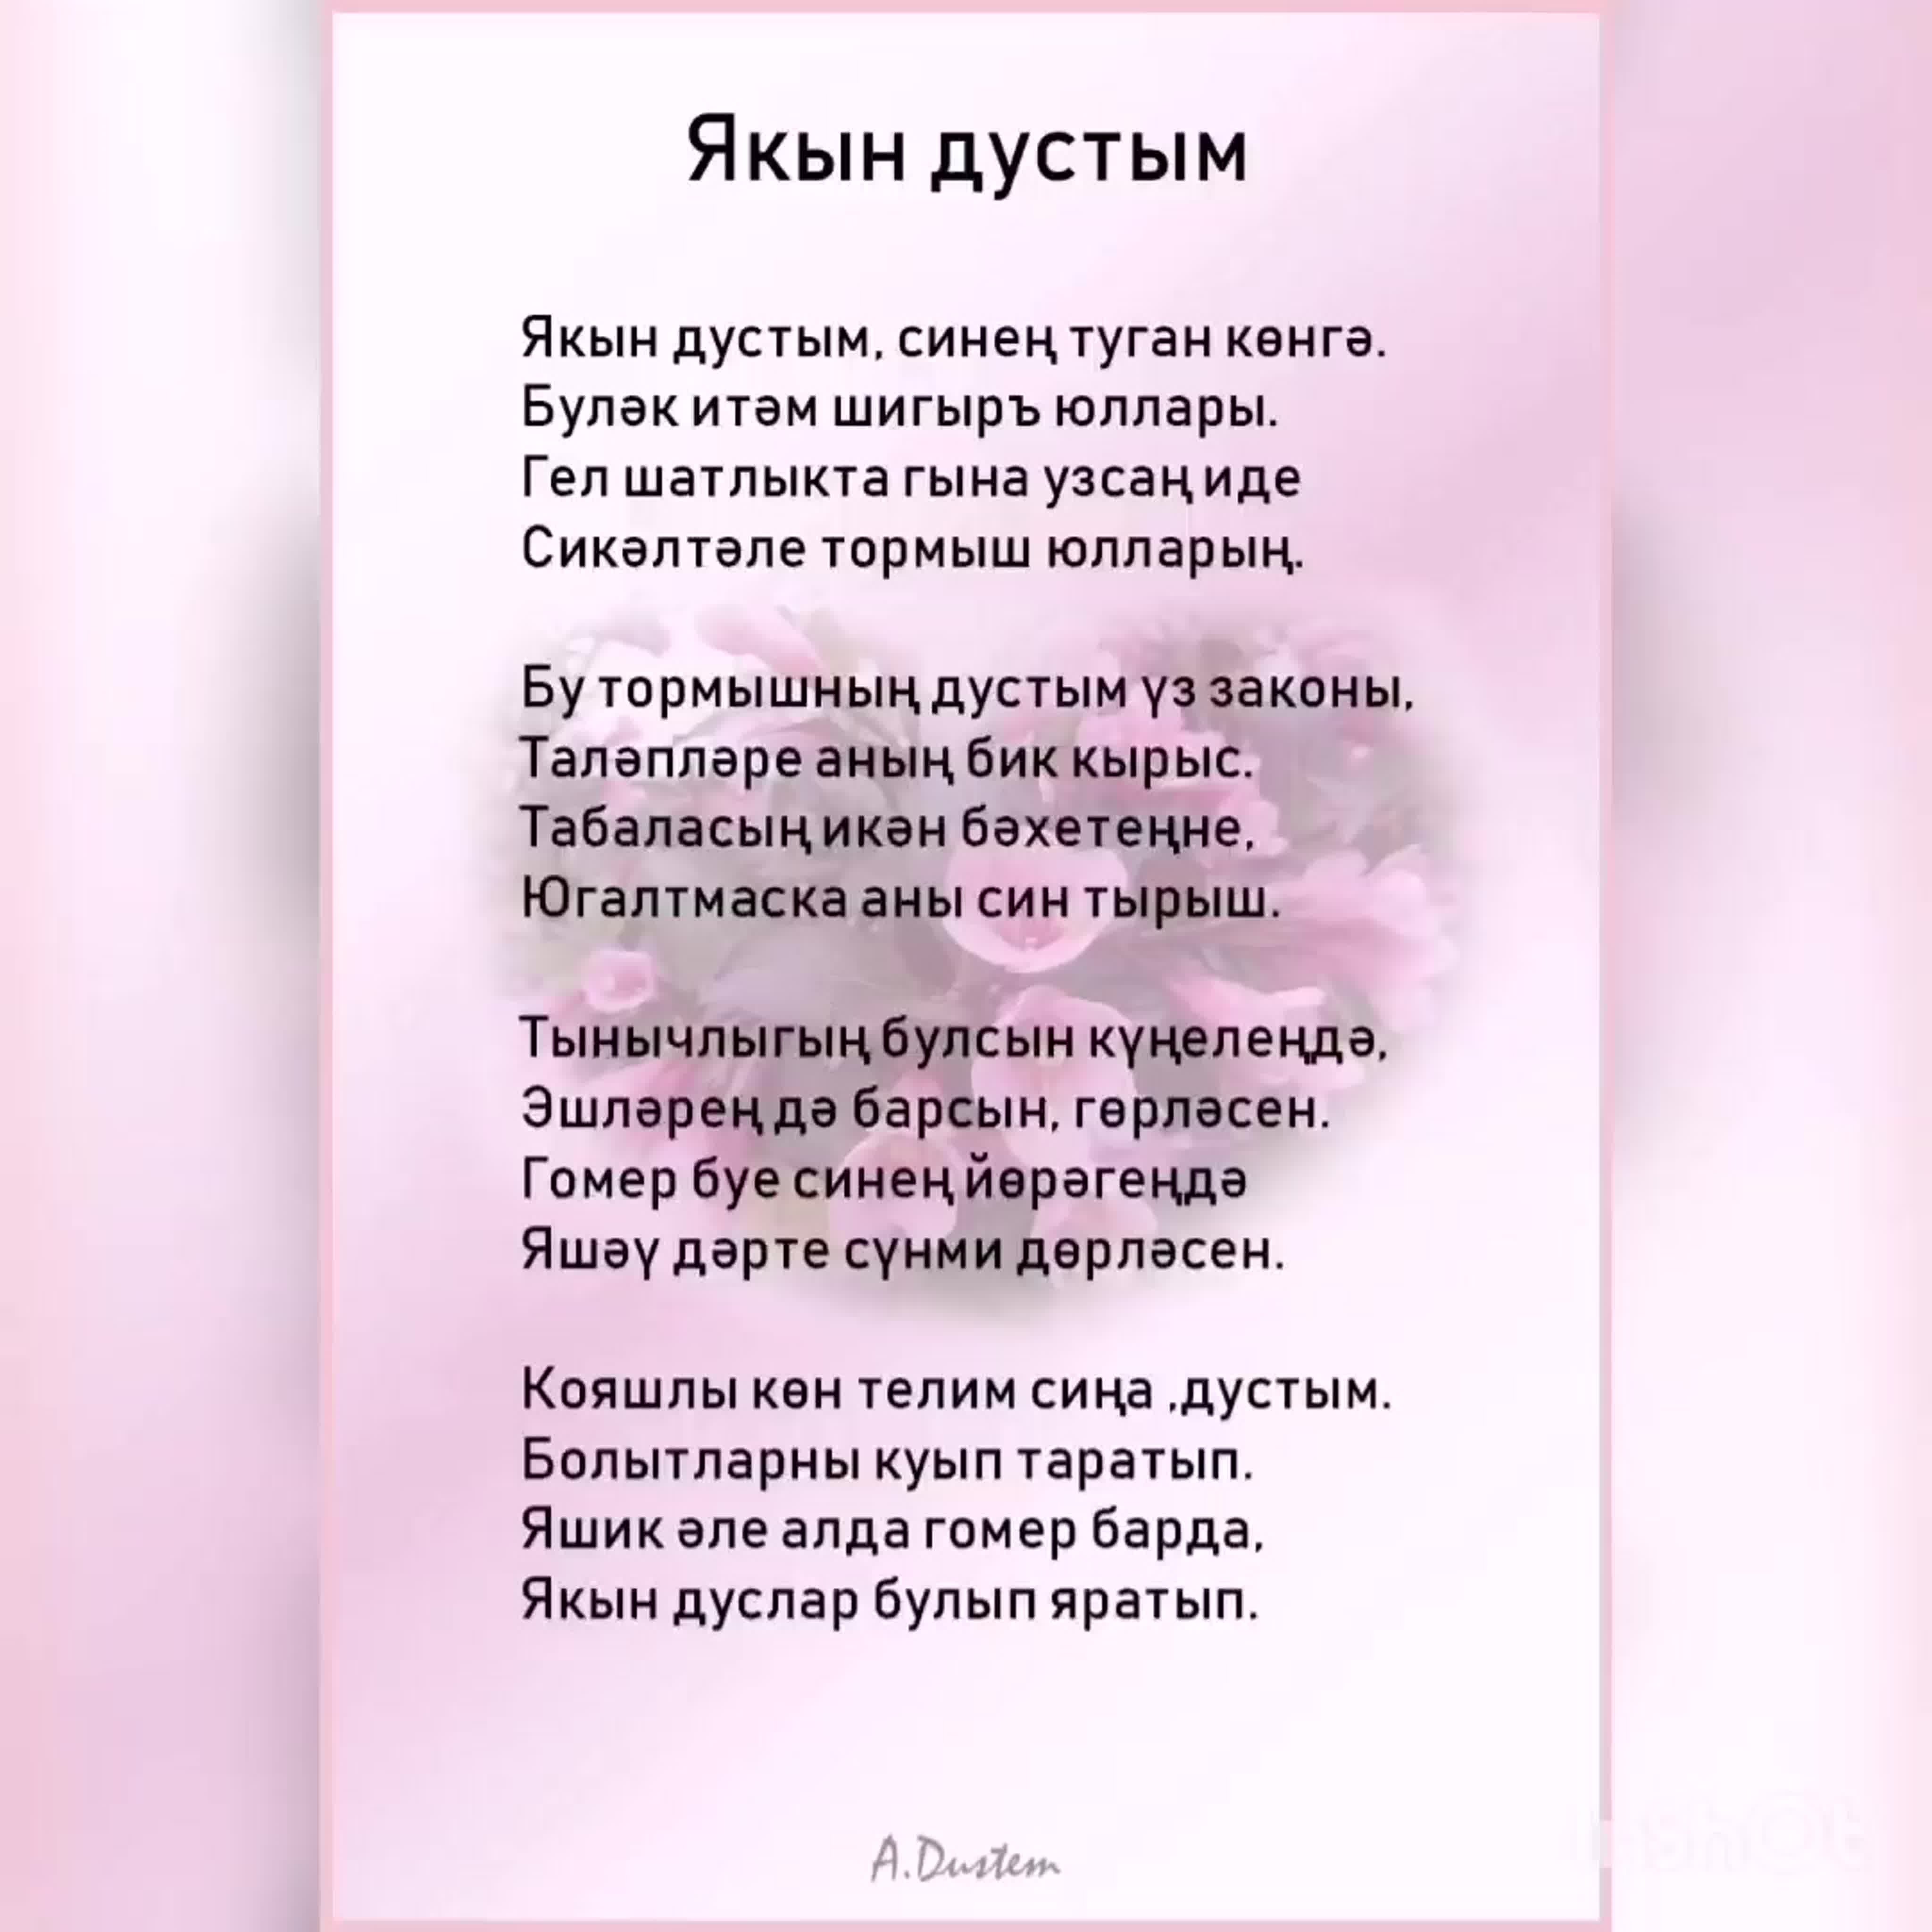 Туган кон стихи на татарском языке